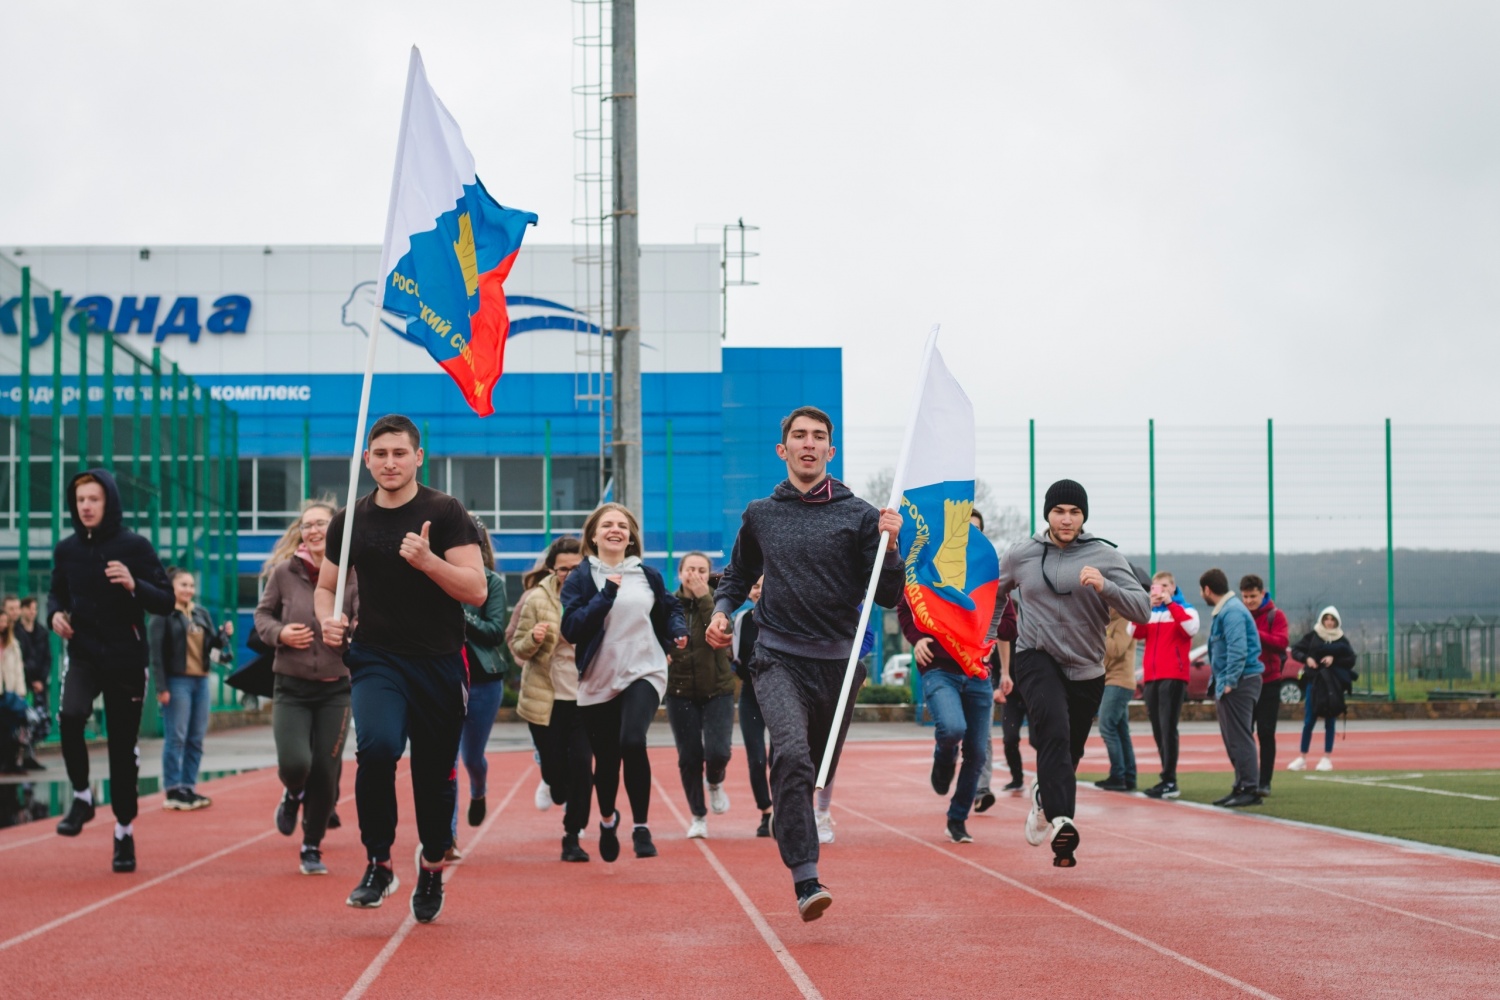 Всемирный день здоровья: россиян приглашают присоединиться к всероссийской акции по ходьбе